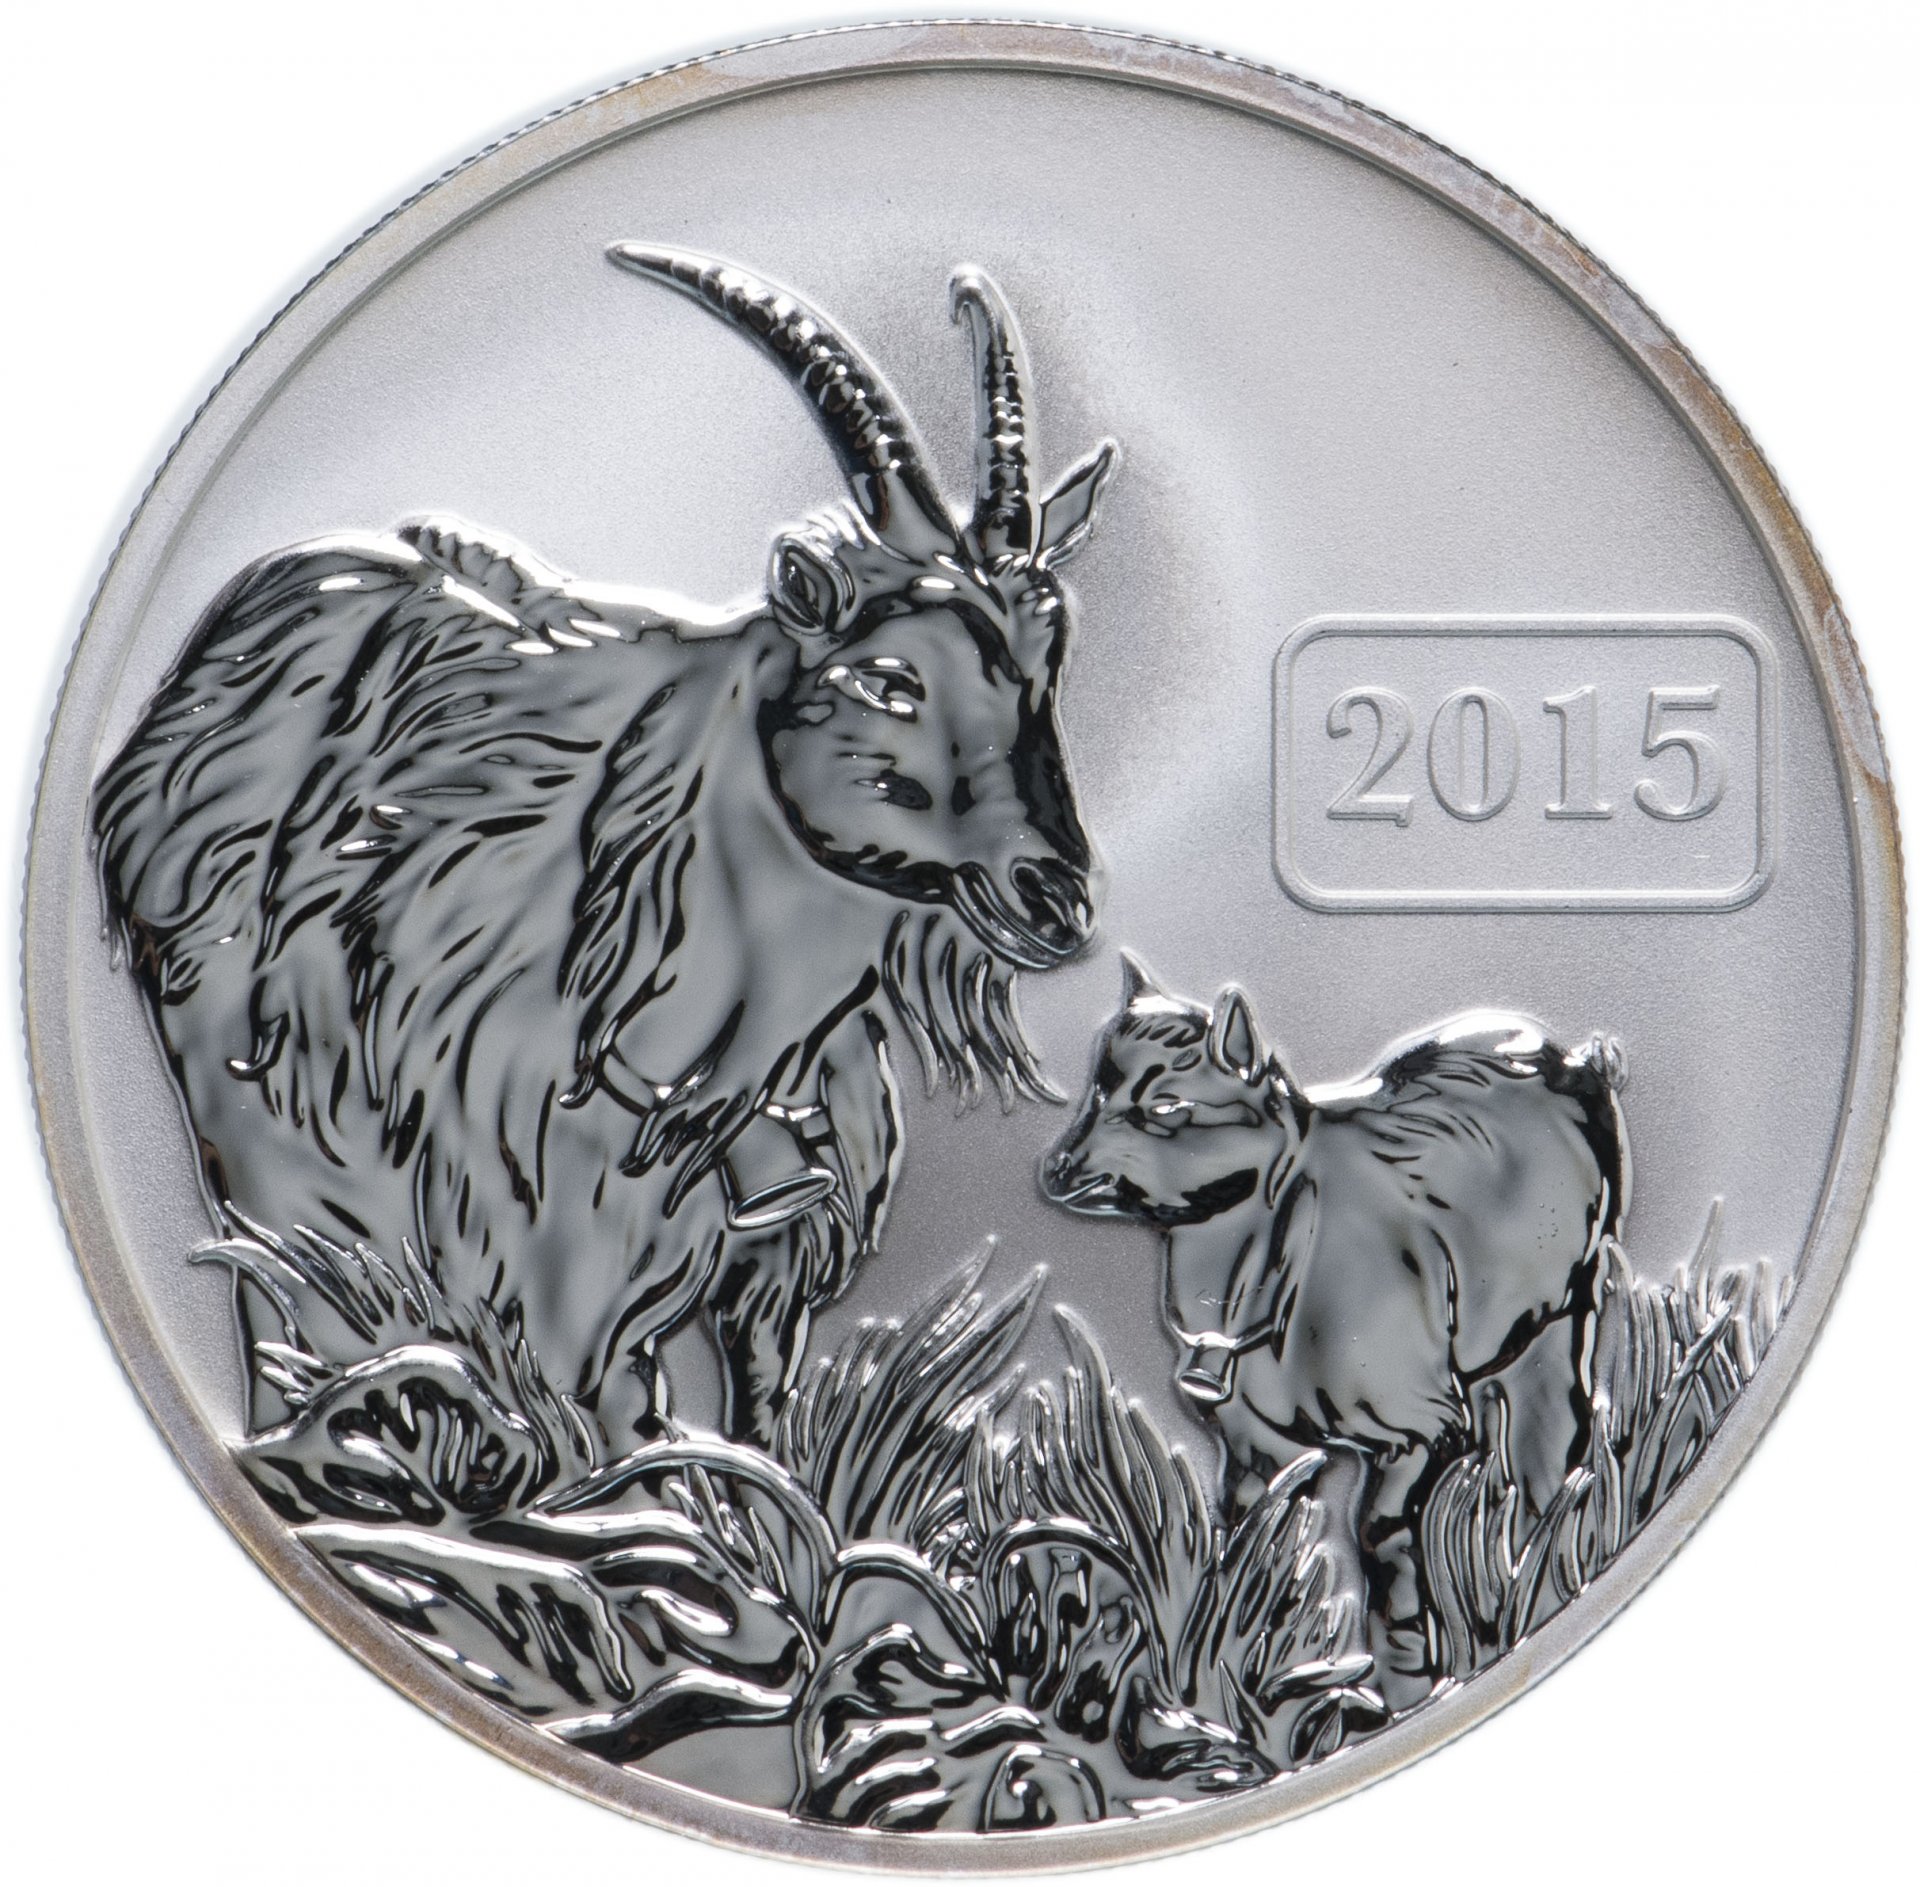 Зодиак год козы. Монета год козы 2015 футляр. Монета год козы 2015 Клевер. Монета серебряная год козы 2015. Токелау 5 долларов, 2015 год козы.